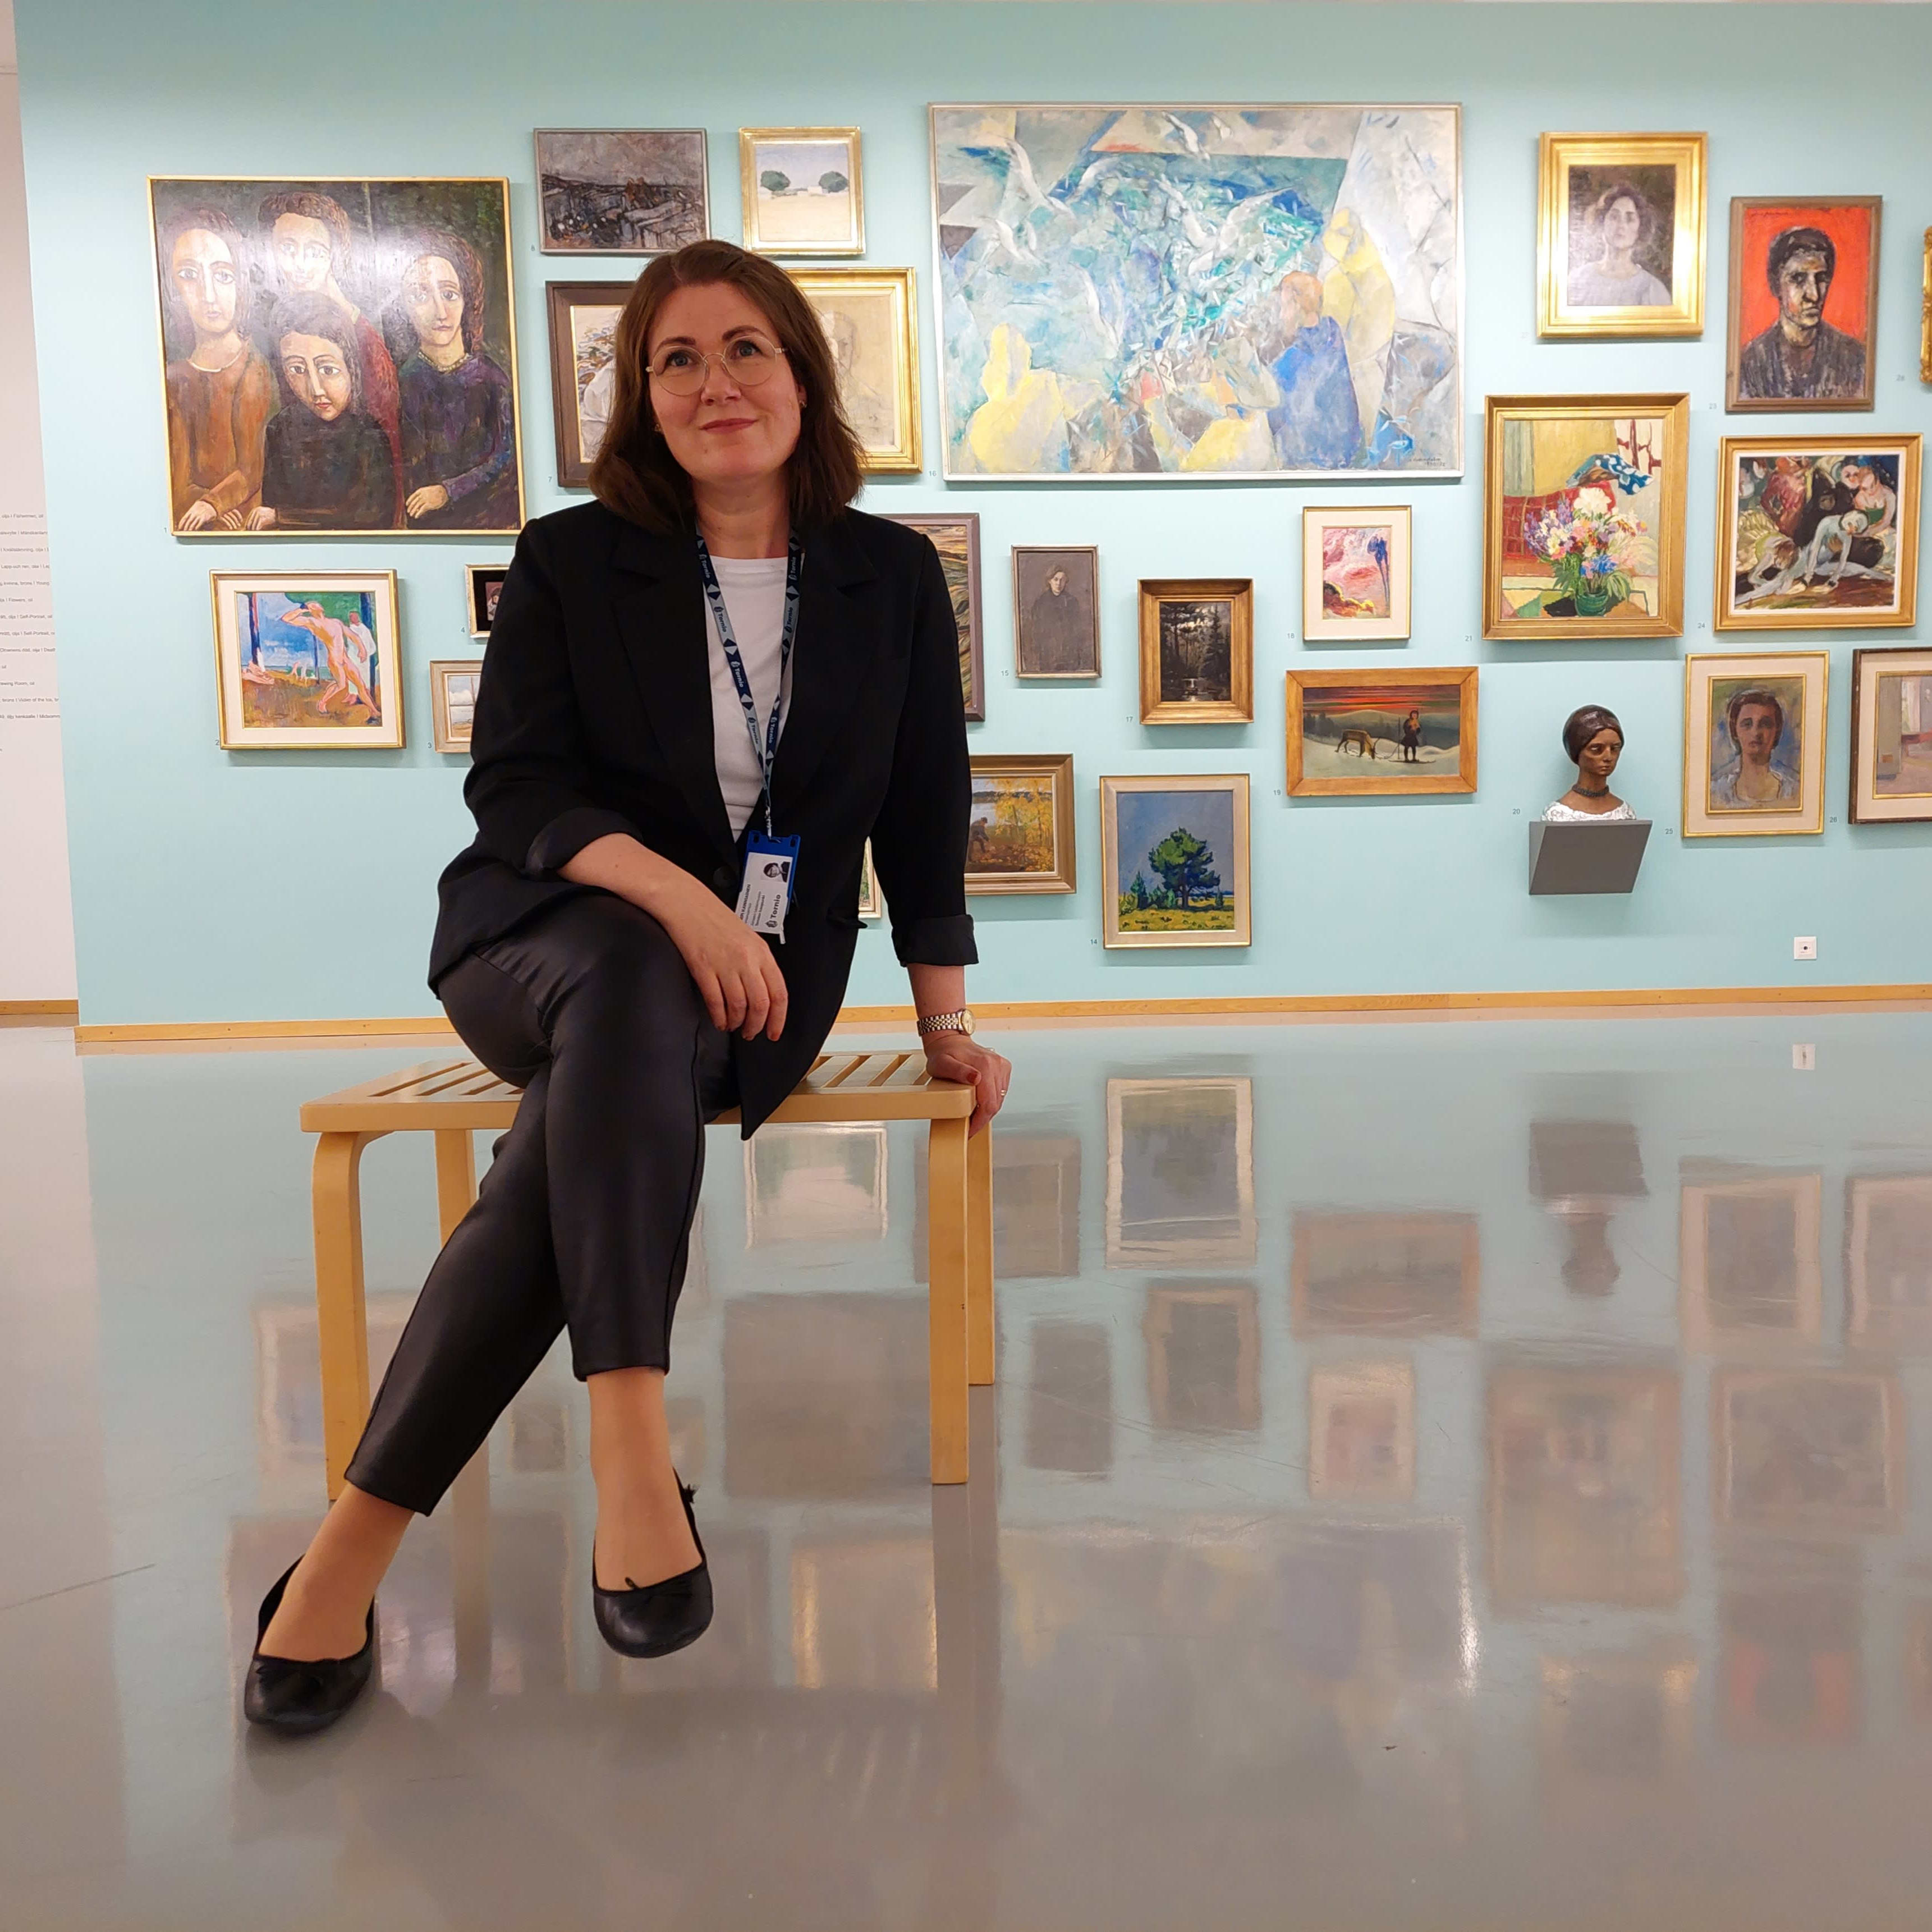 Aineen taidemuseon uusi johtaja Virpi Kanniainen istuu näyttelysalissa penkillä. Taustaseinällä on värikkäitä maalauksia ja veistoksia.